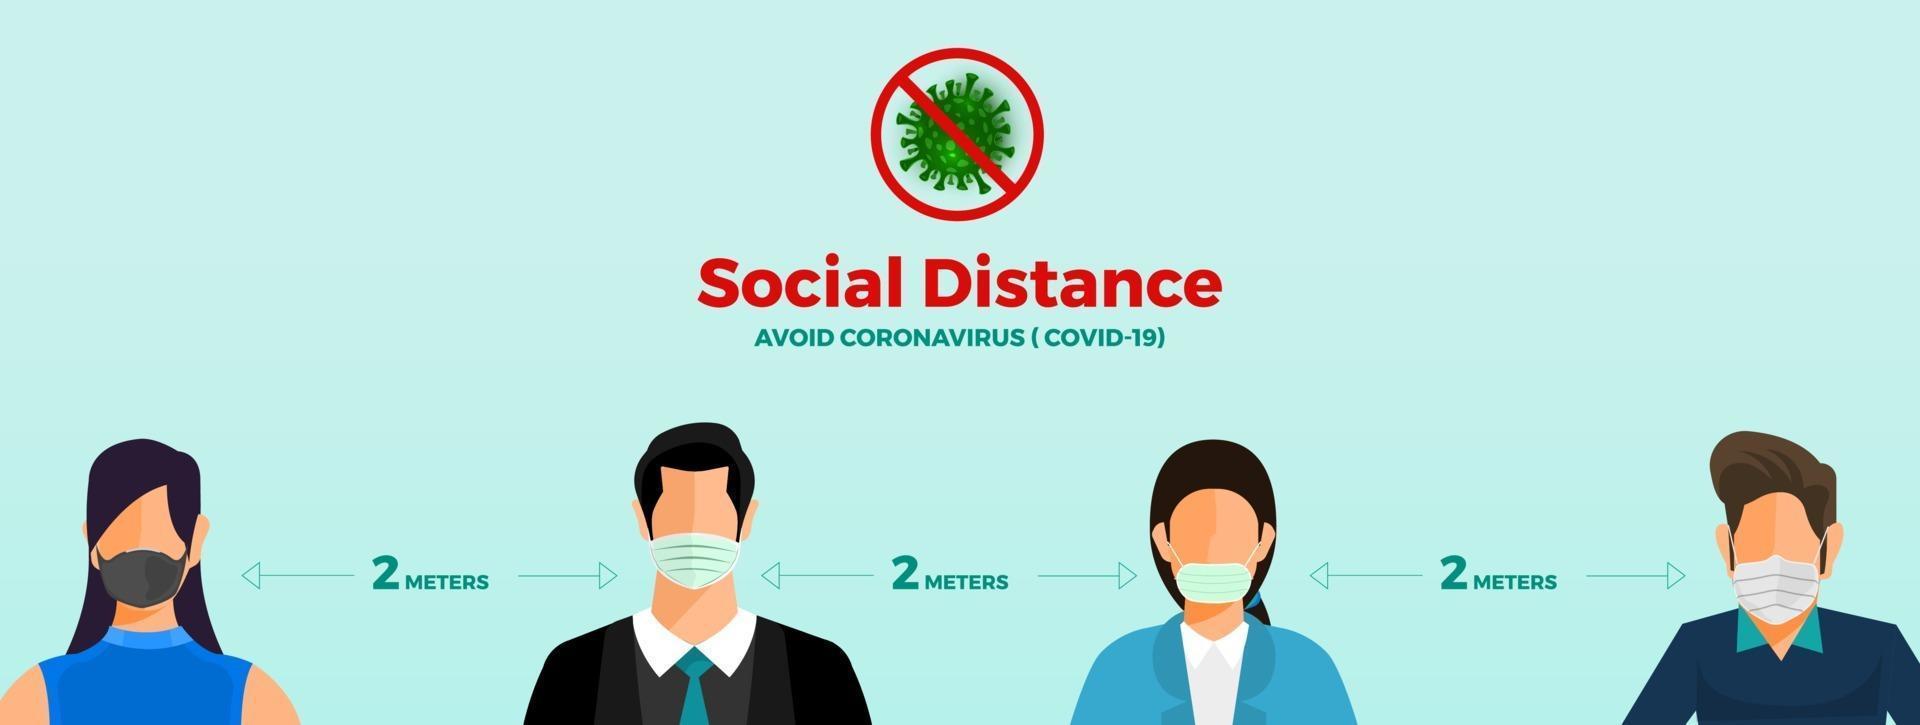 sociale afstand nemen om covid-19 te vermijden vector